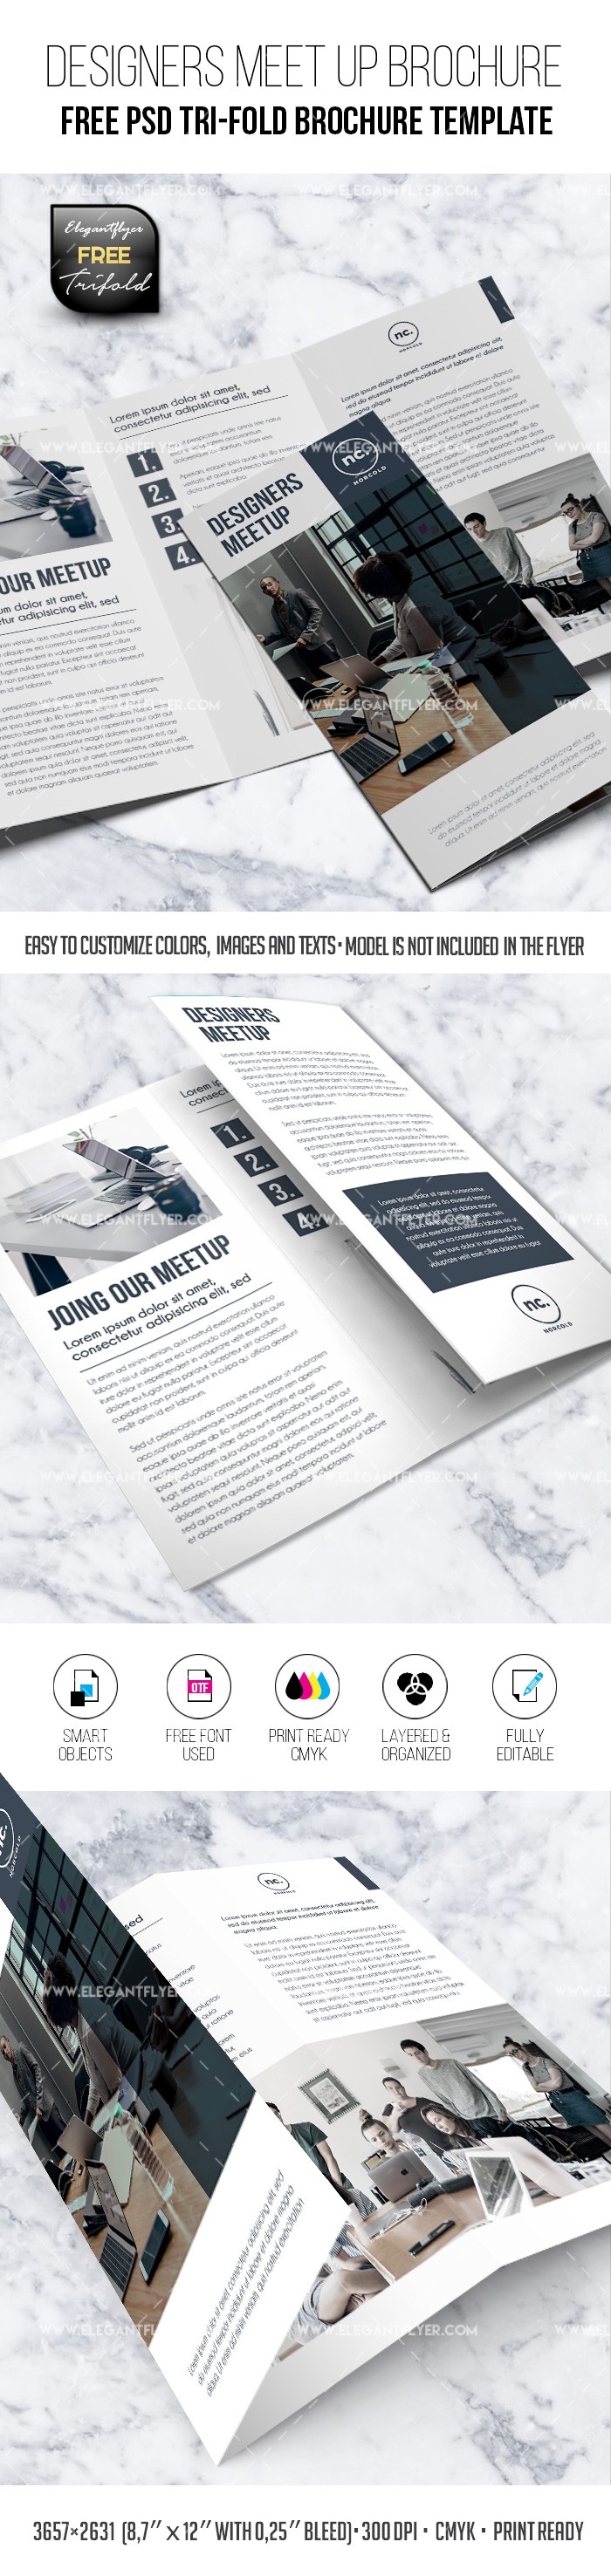 Designers rassemblent - Modèle de brochure PSD triptyque gratuit. by ElegantFlyer